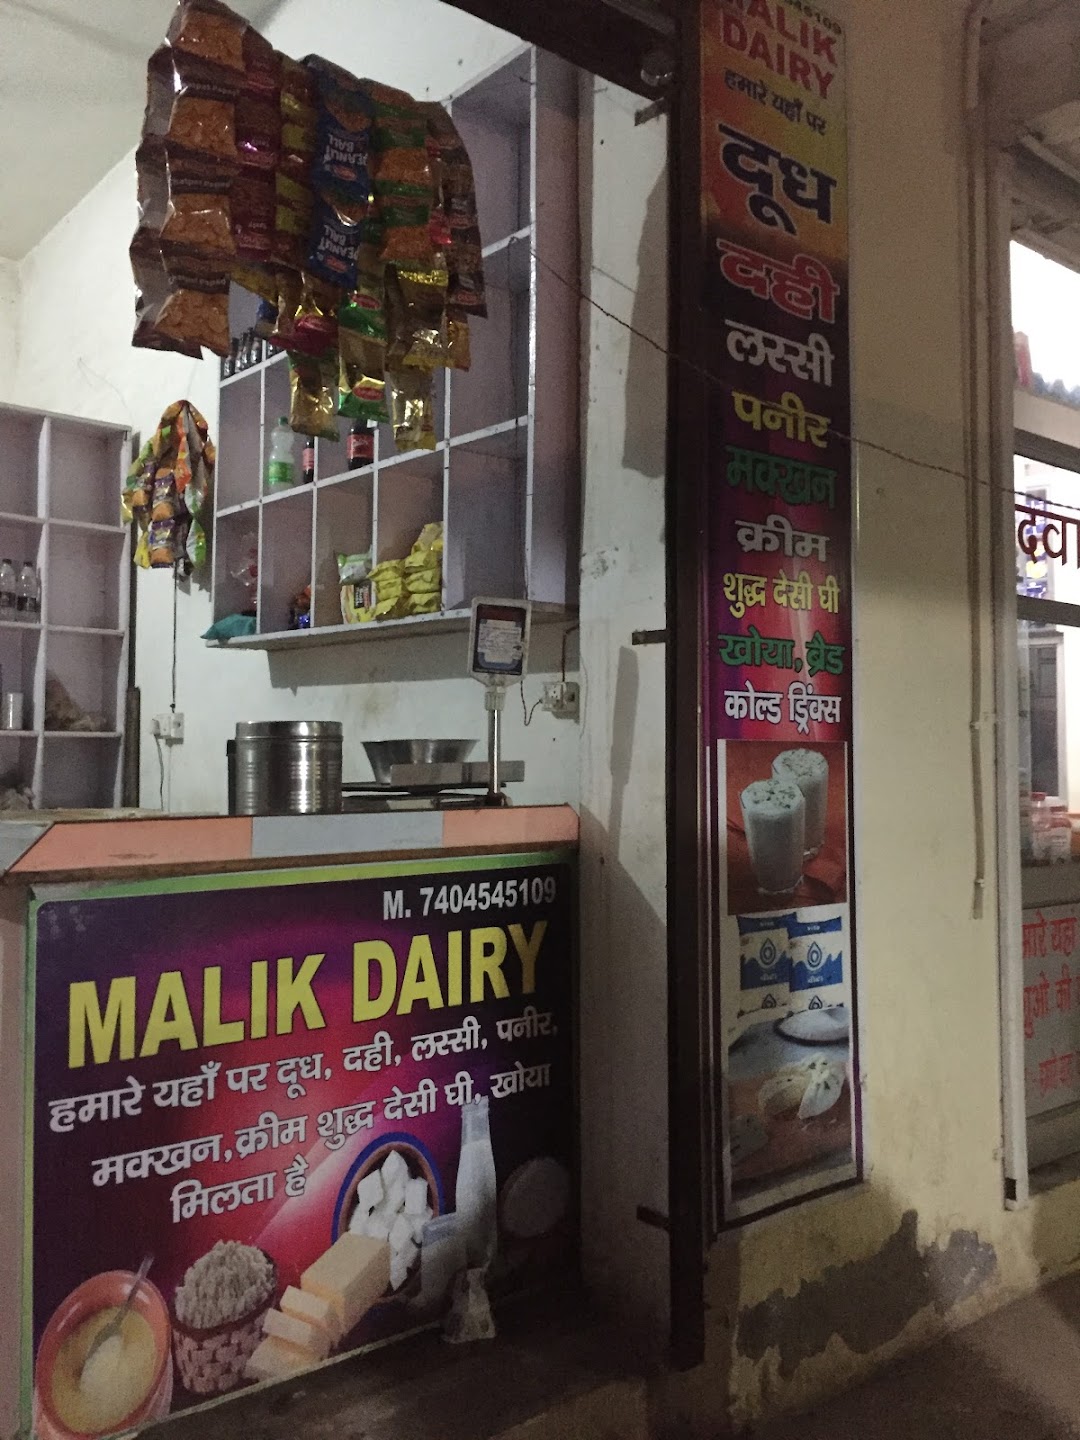 Malik dairy